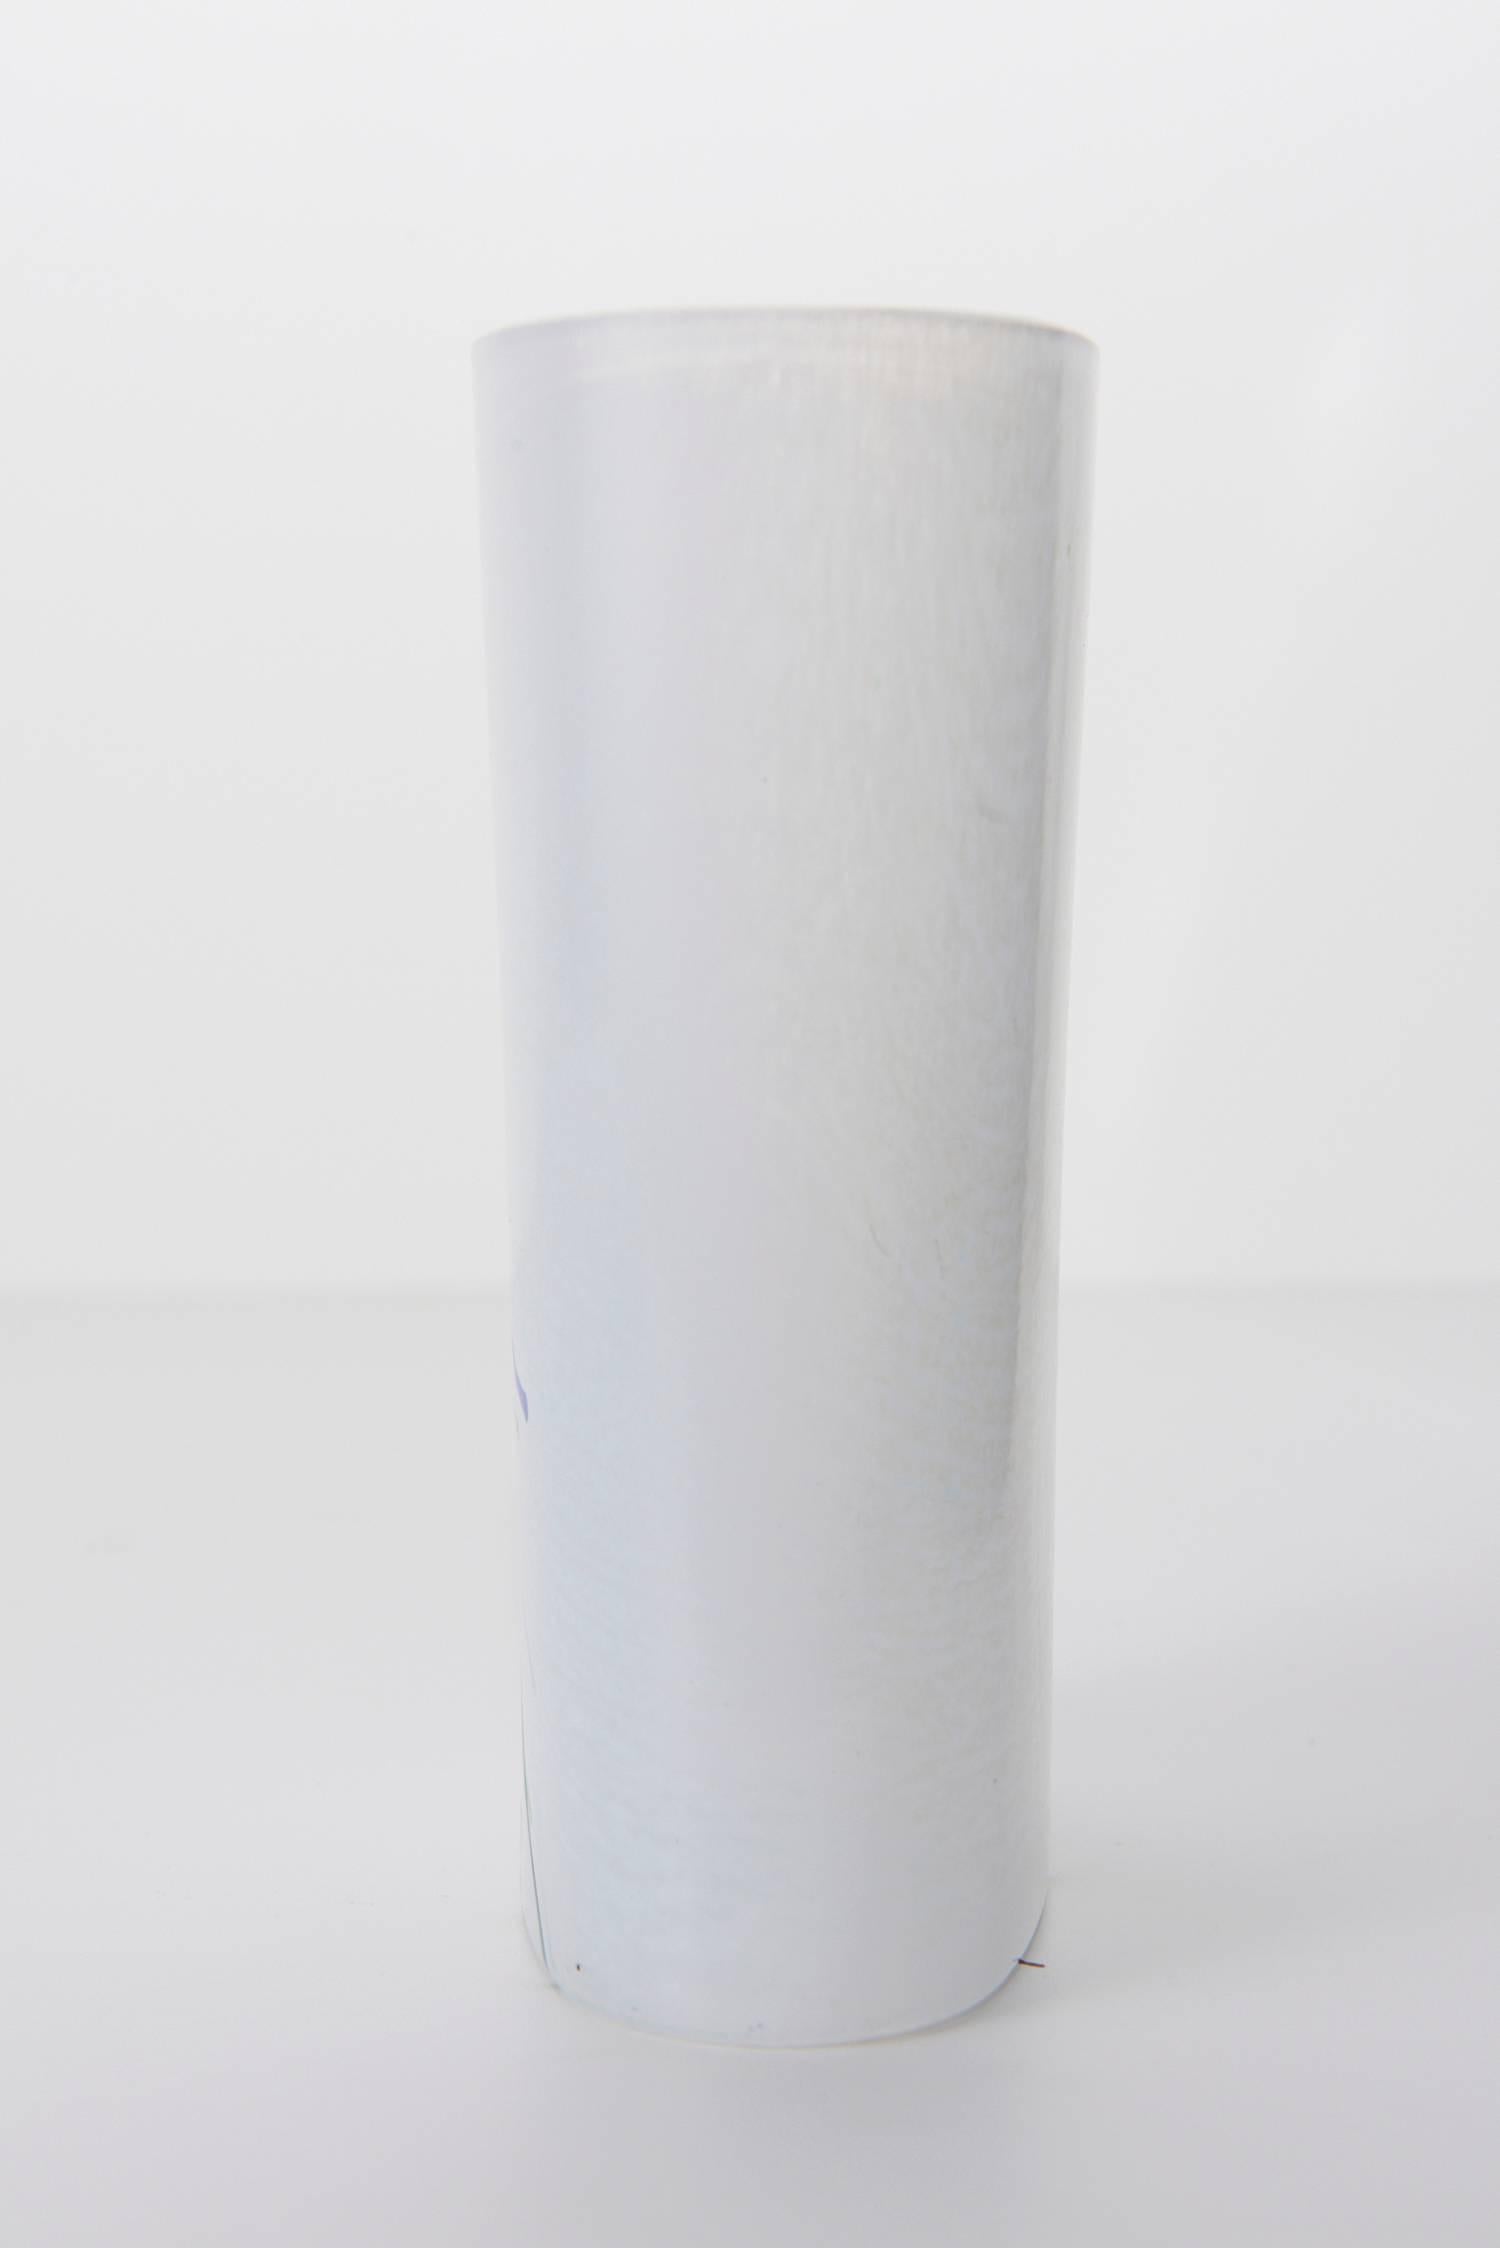 Post-Modern Swedish Art Glass Vase by Bertil Vallien for Kosta Boda, 1980s